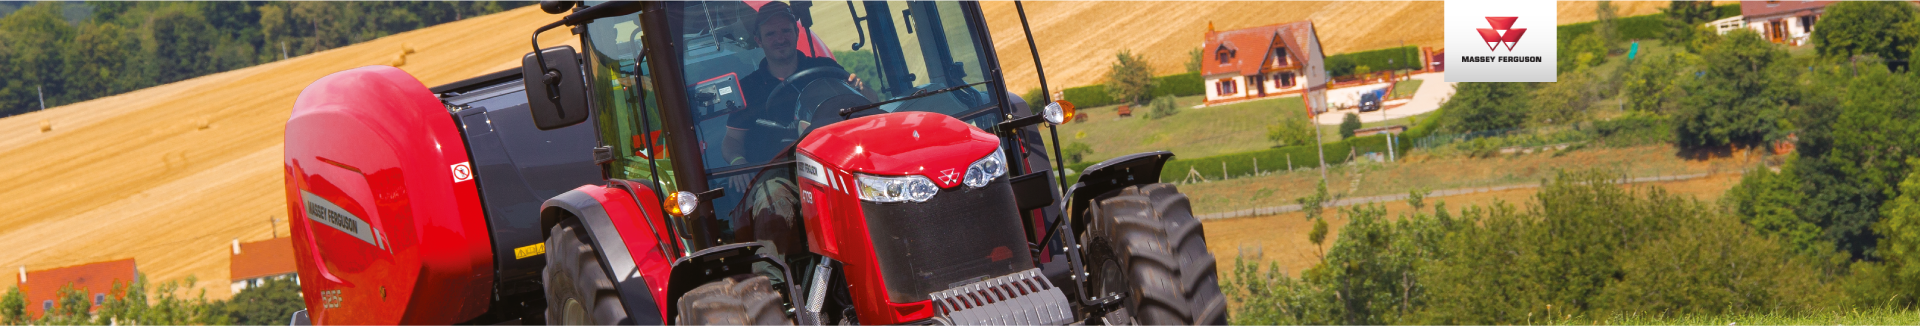 Massey Ferguson lauksaimniecības traktori